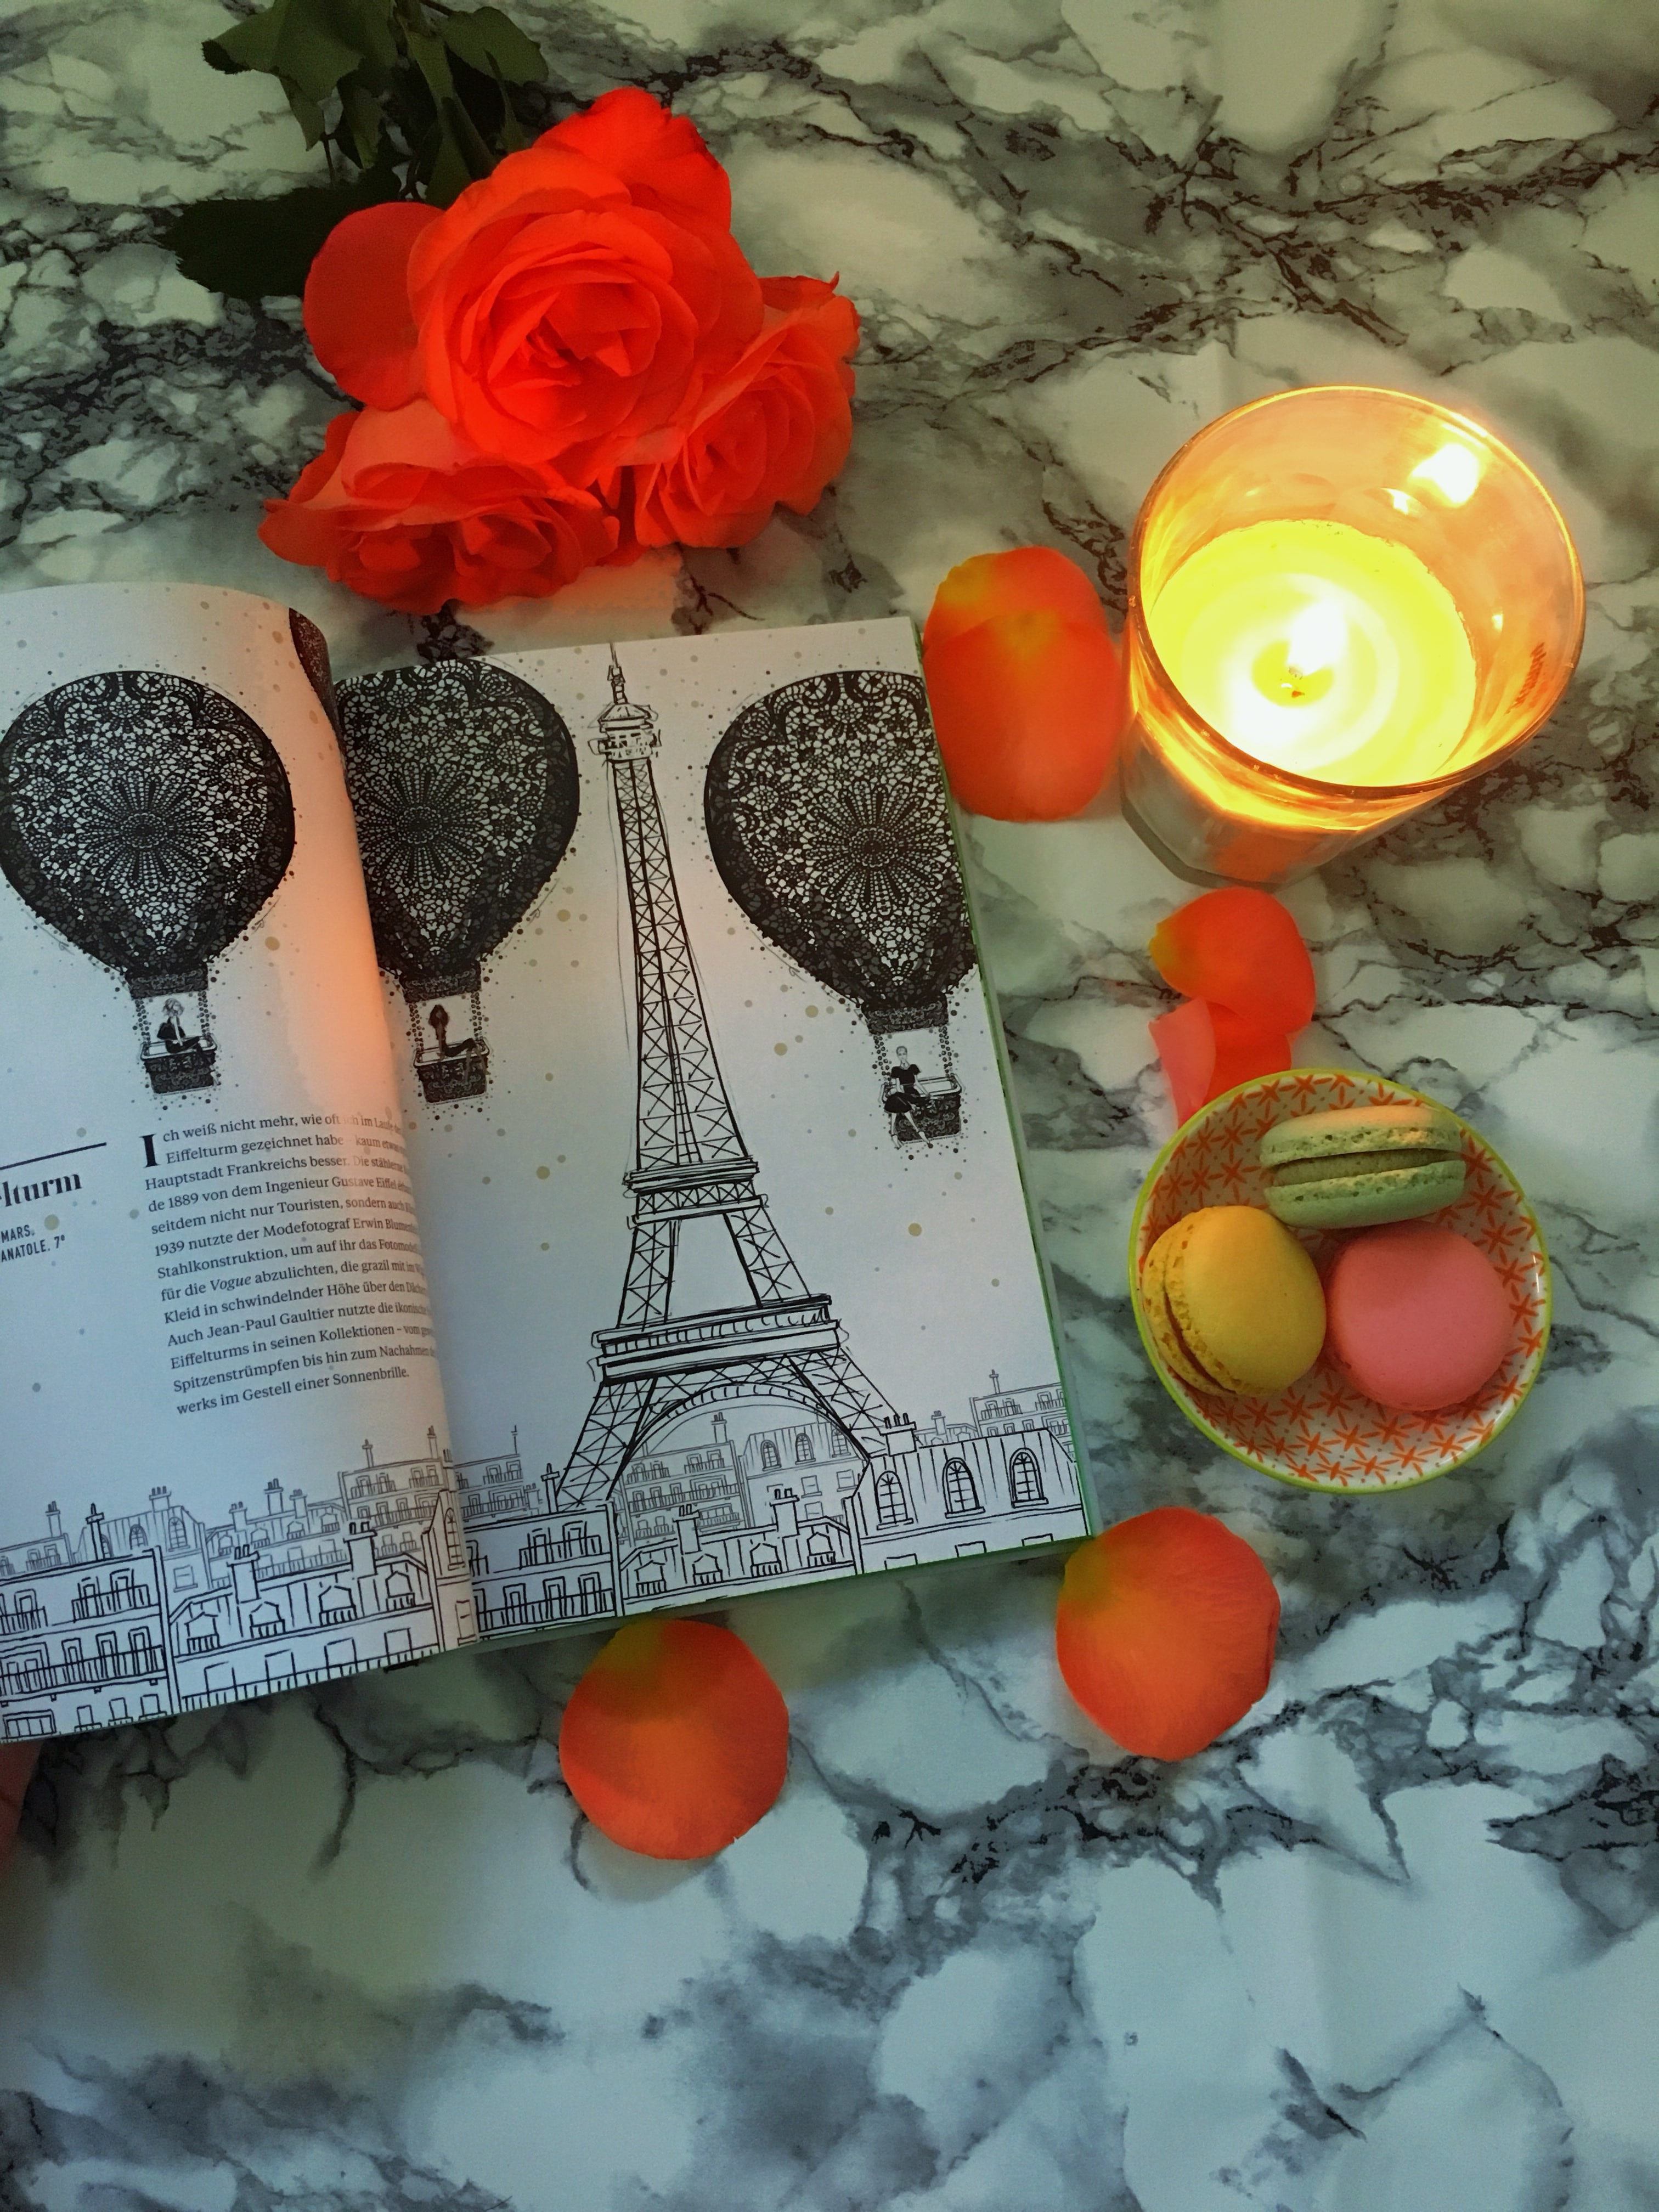 In "Paris - Der Fashion- und Lifestyle-Guide" zeigt uns Megan Hess die wichtigsten Orte der tollen Fashion Metropole und entführt uns in die Stadt der Liebe